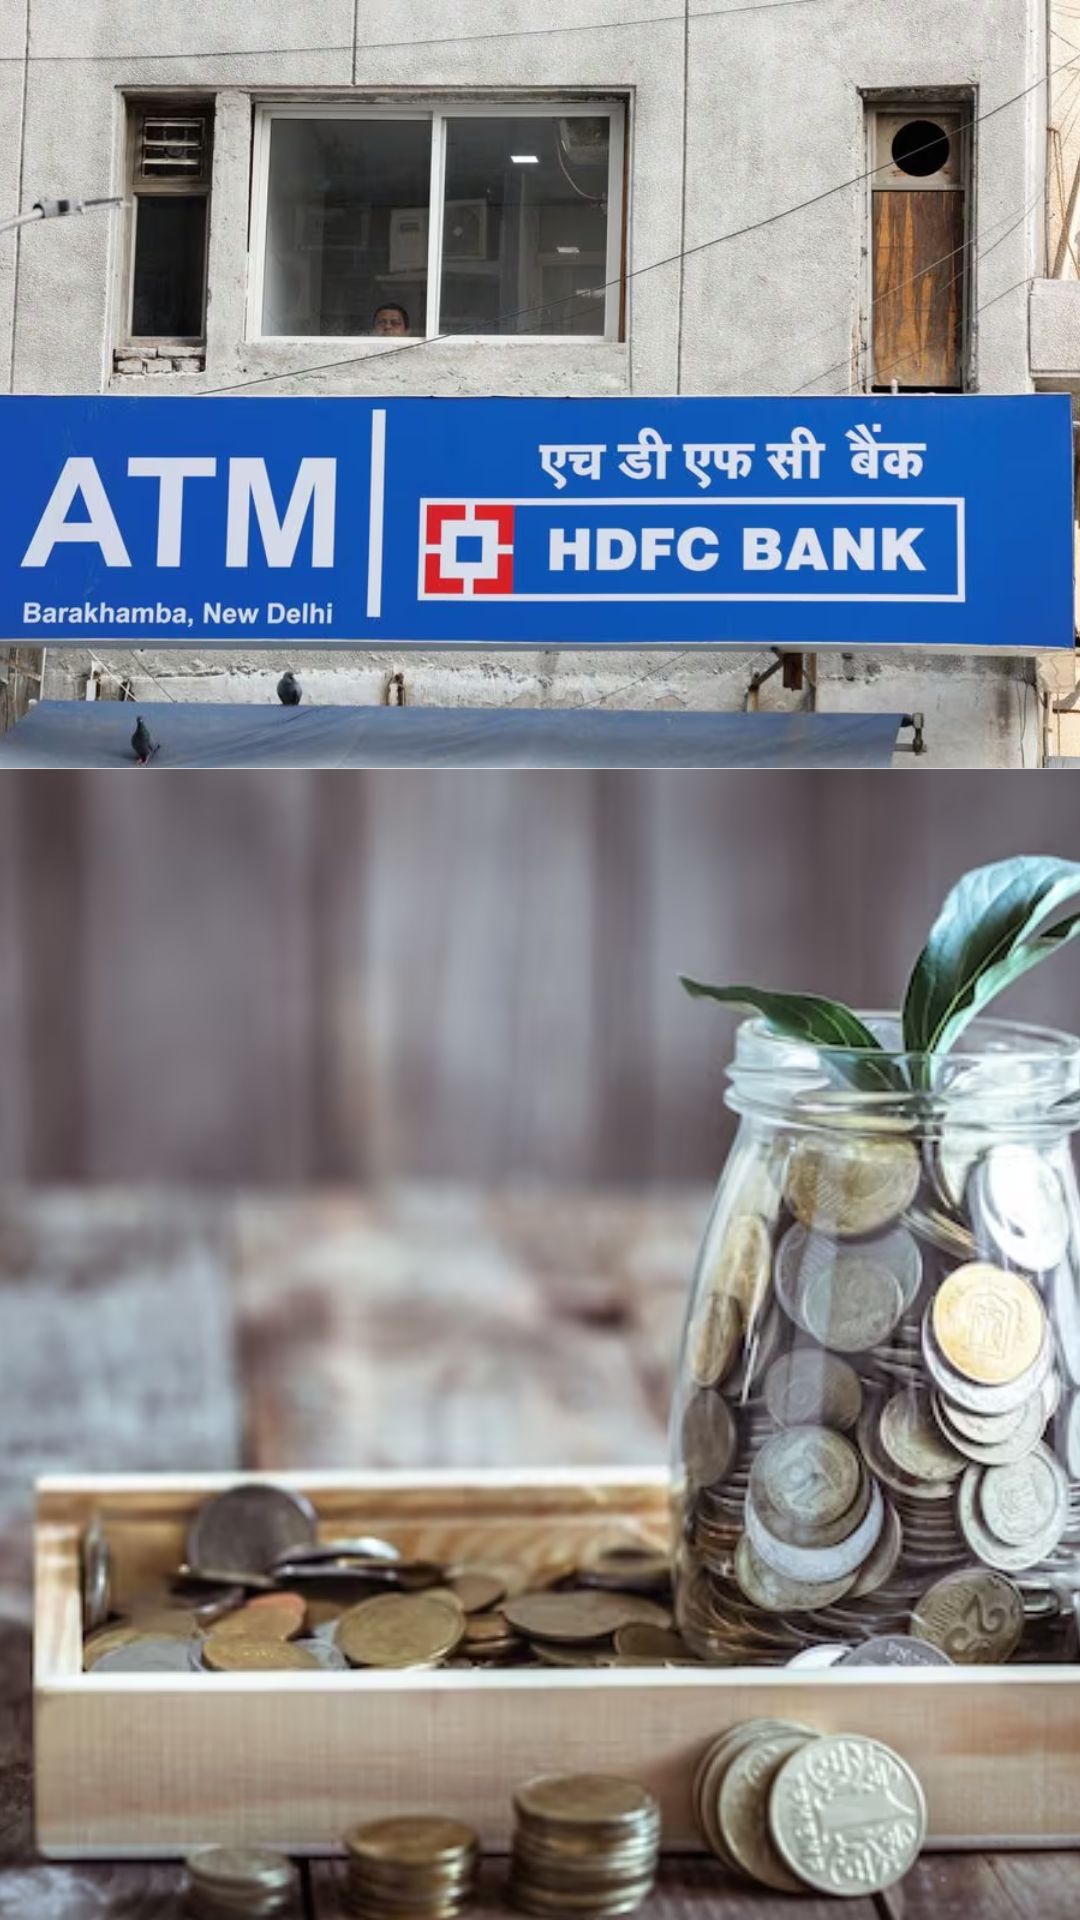 HDFC Bank में 120 महीने की RD स्कीम में ₹1200 मंथली डिपोजिट पर मेच्योरिटी अमाउंट कितना बनेगा?